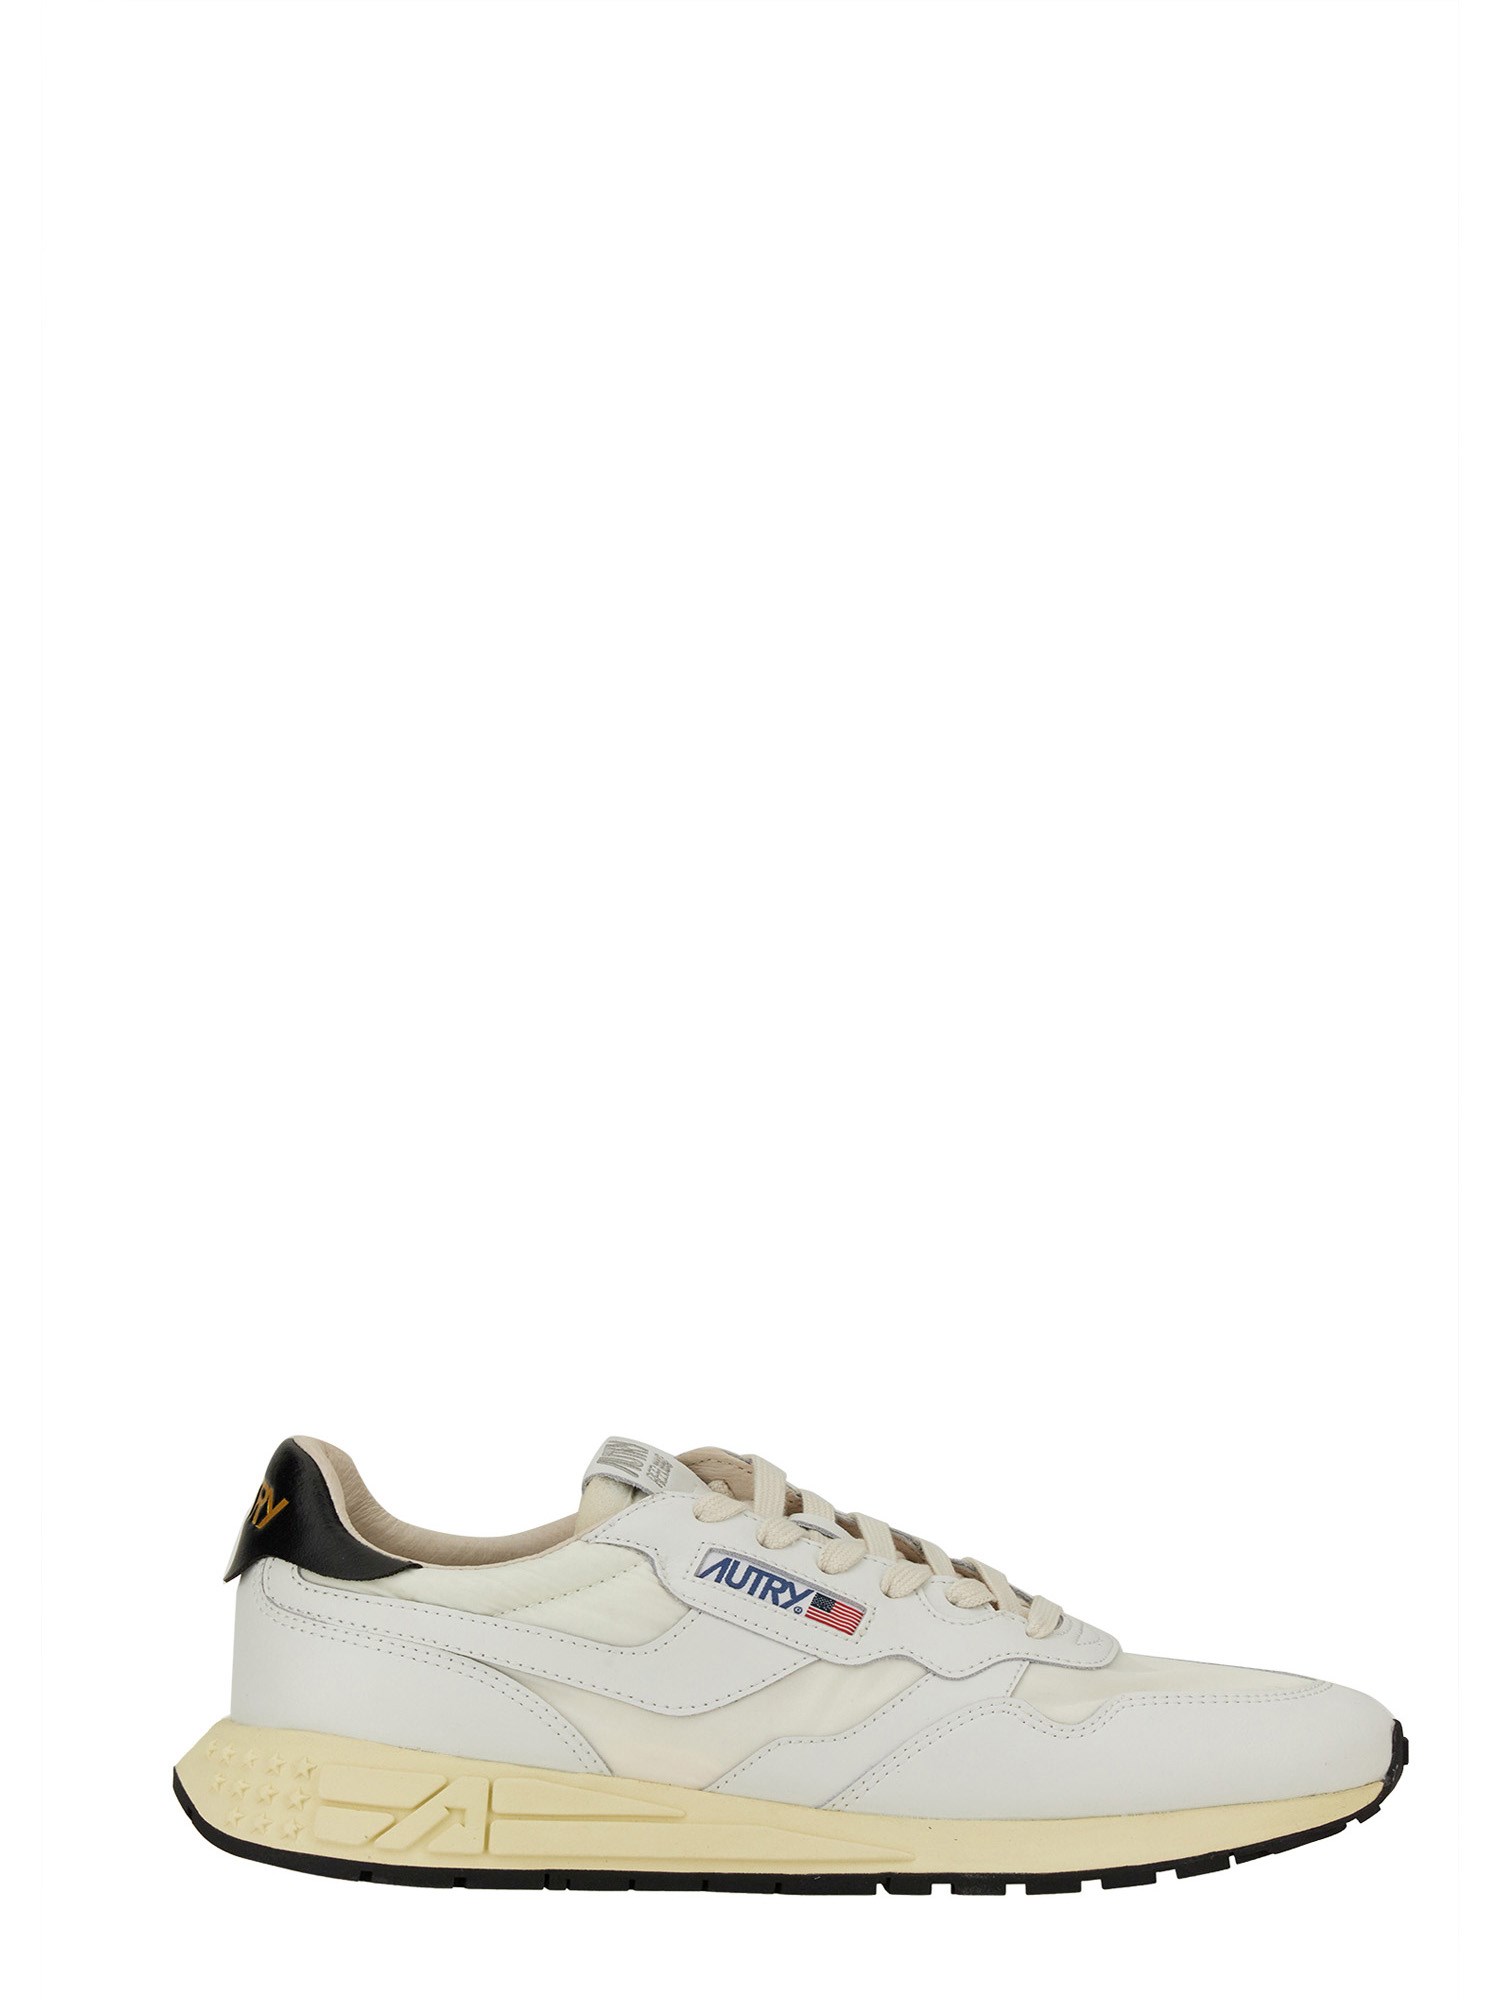 Shop Autry Sneaker "reelwind" Low In White